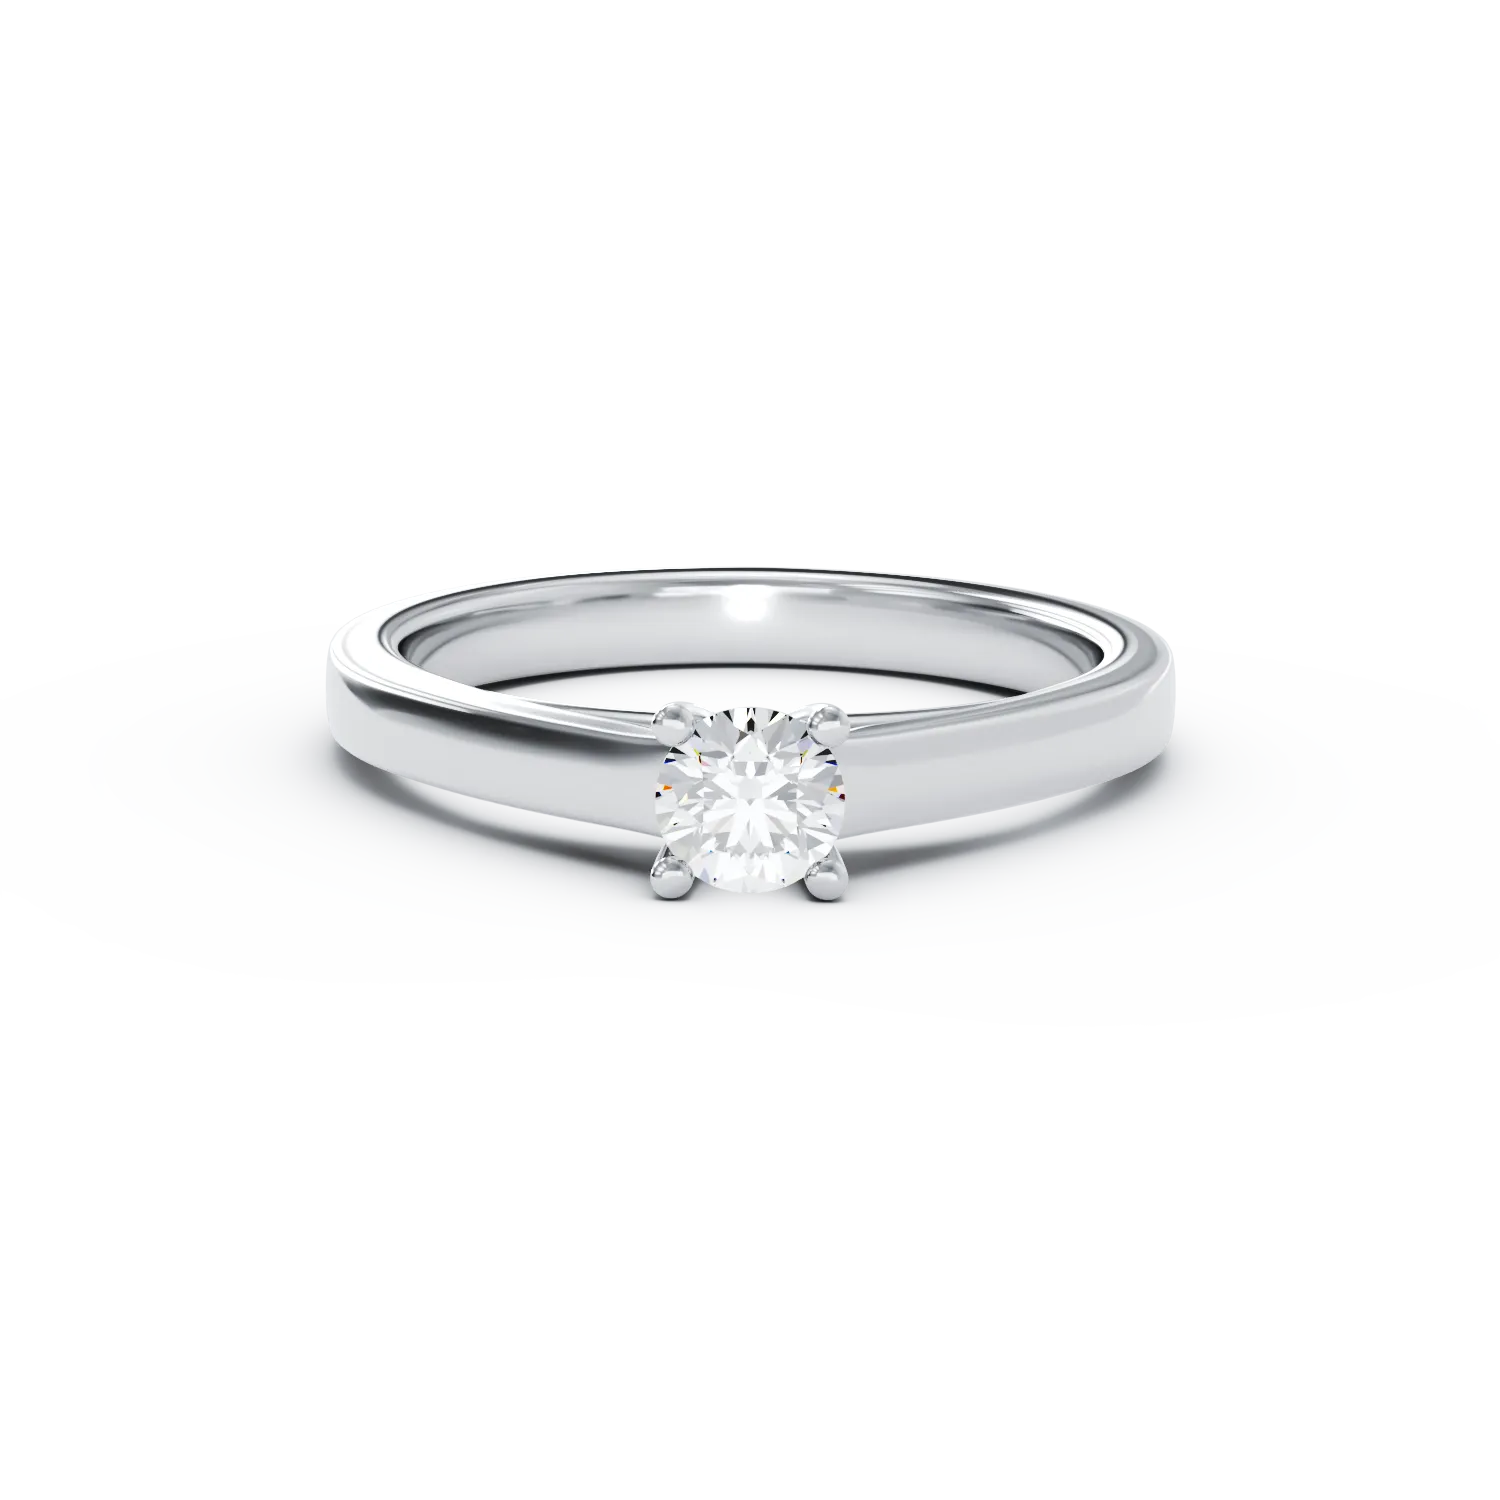 Eljegyzési gyűrű 18K-os fehér aranyból 0,24ct gyémánttal. Gramm: 3,41